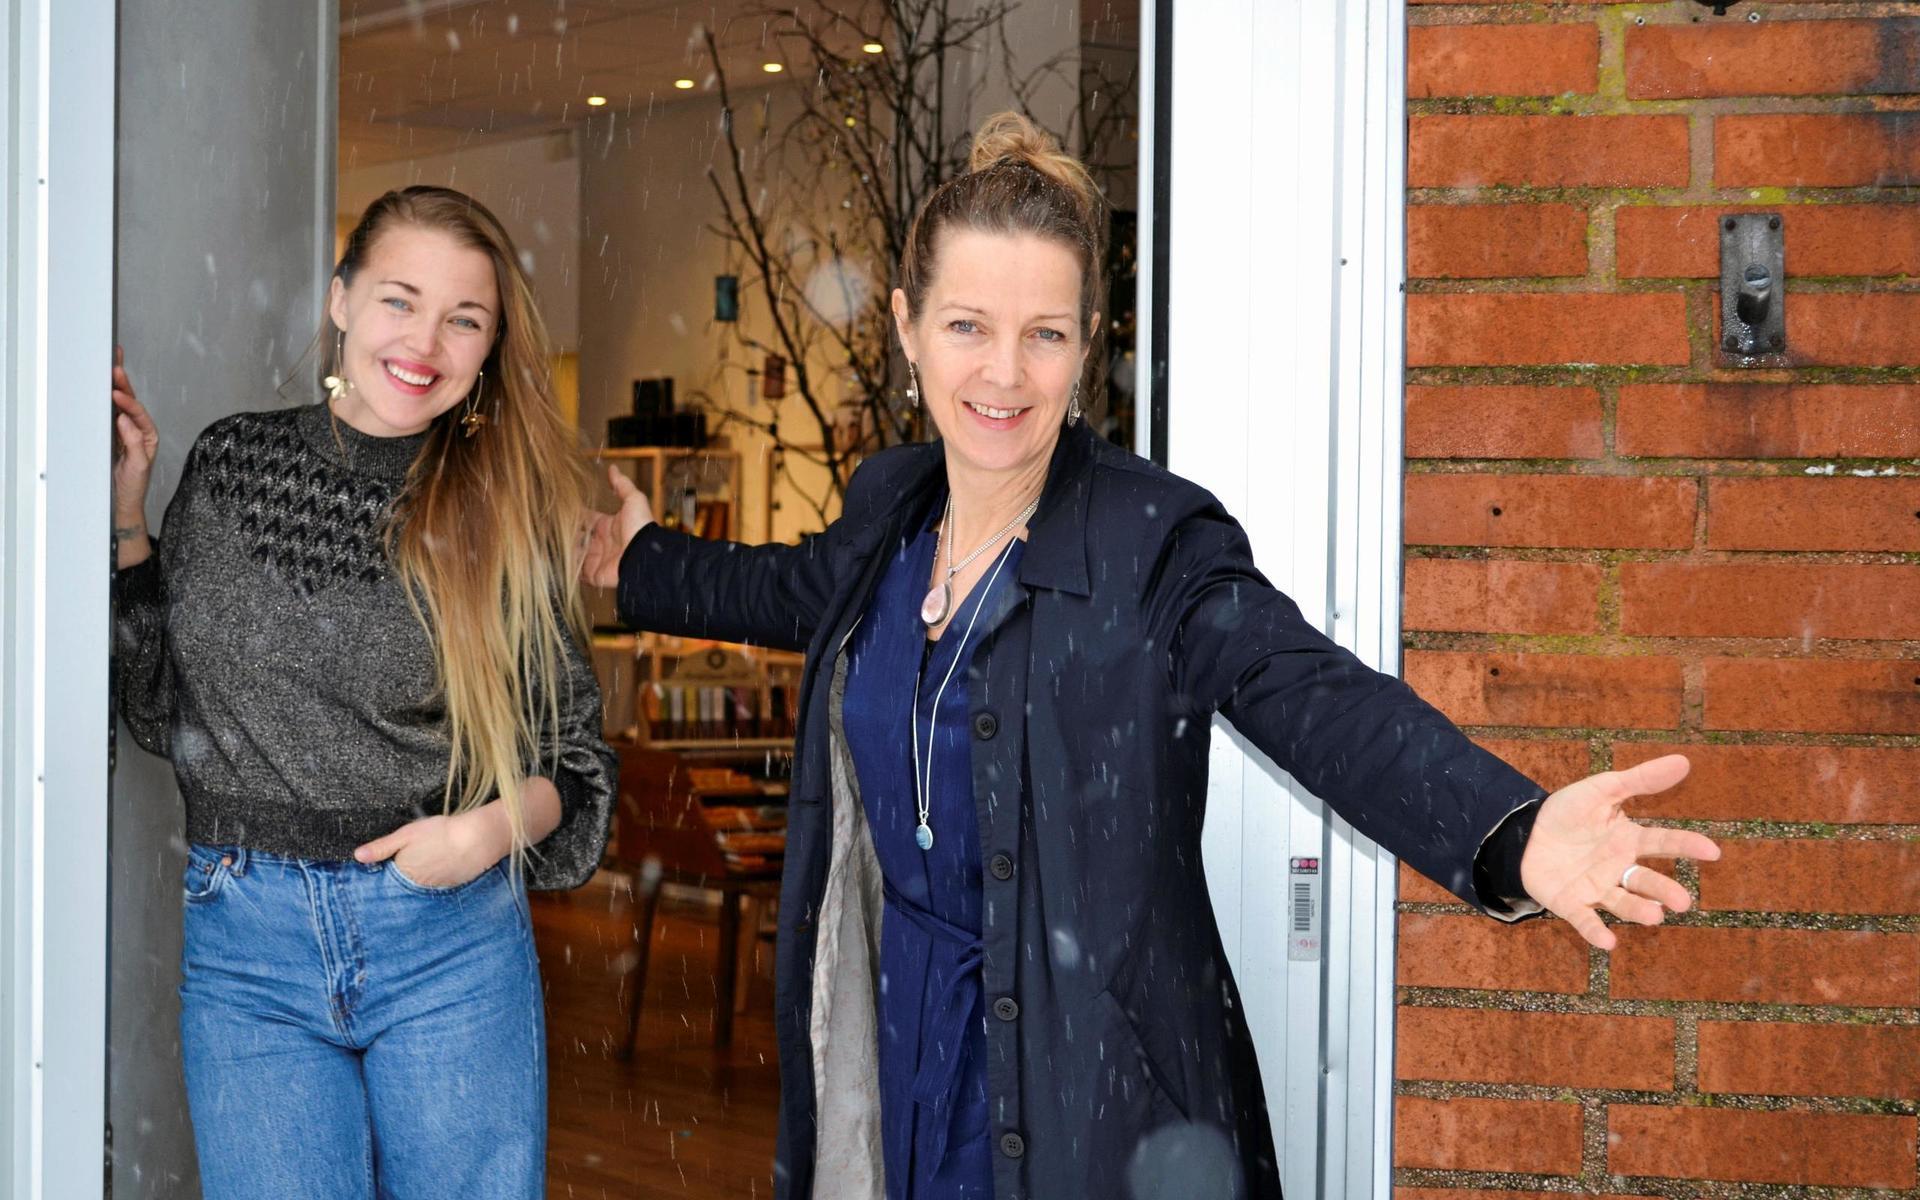 Petra Ollstig öppnar famnen för alla Varbergsbor som öppnat famnen för hennes och Sanna Lis nya butik Studio Bliss.